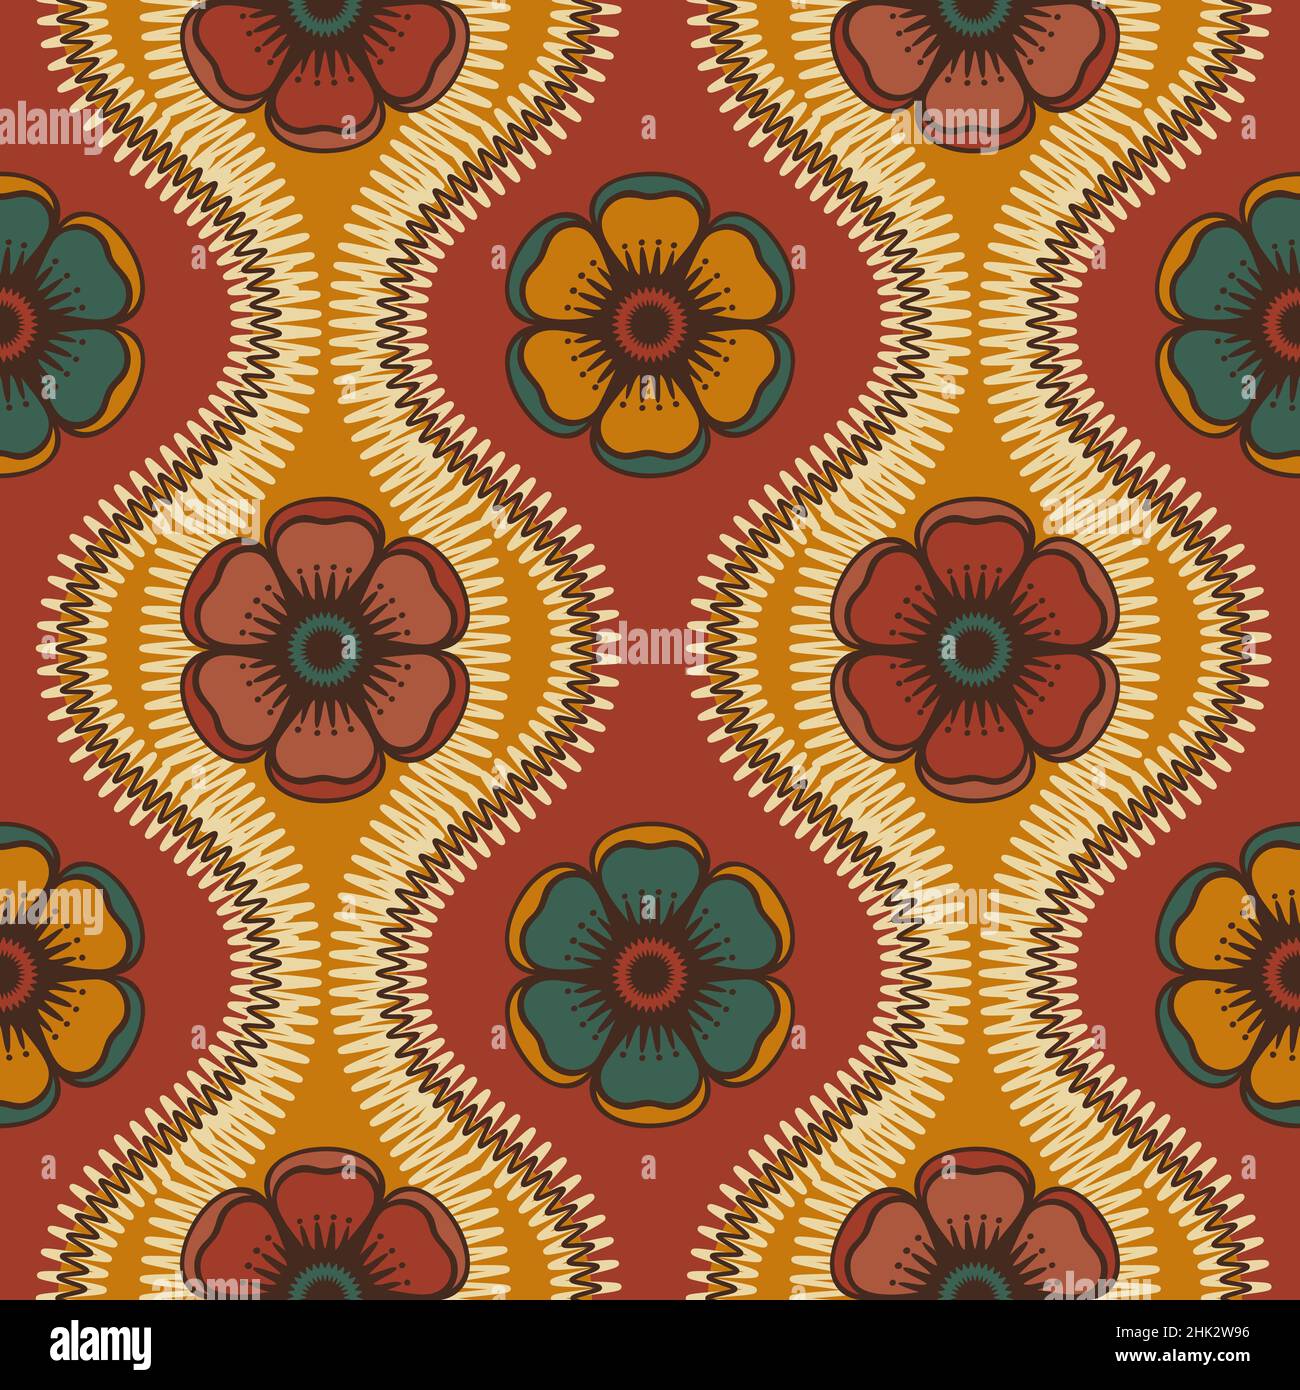 Florale Tapeten inspiriert von Retro 60s 70s Tapeten und Stoffen, nahtlose Vektor-Muster. Ogee Formen und stilisierte Blumen, Vektor-Illustration. Stock Vektor